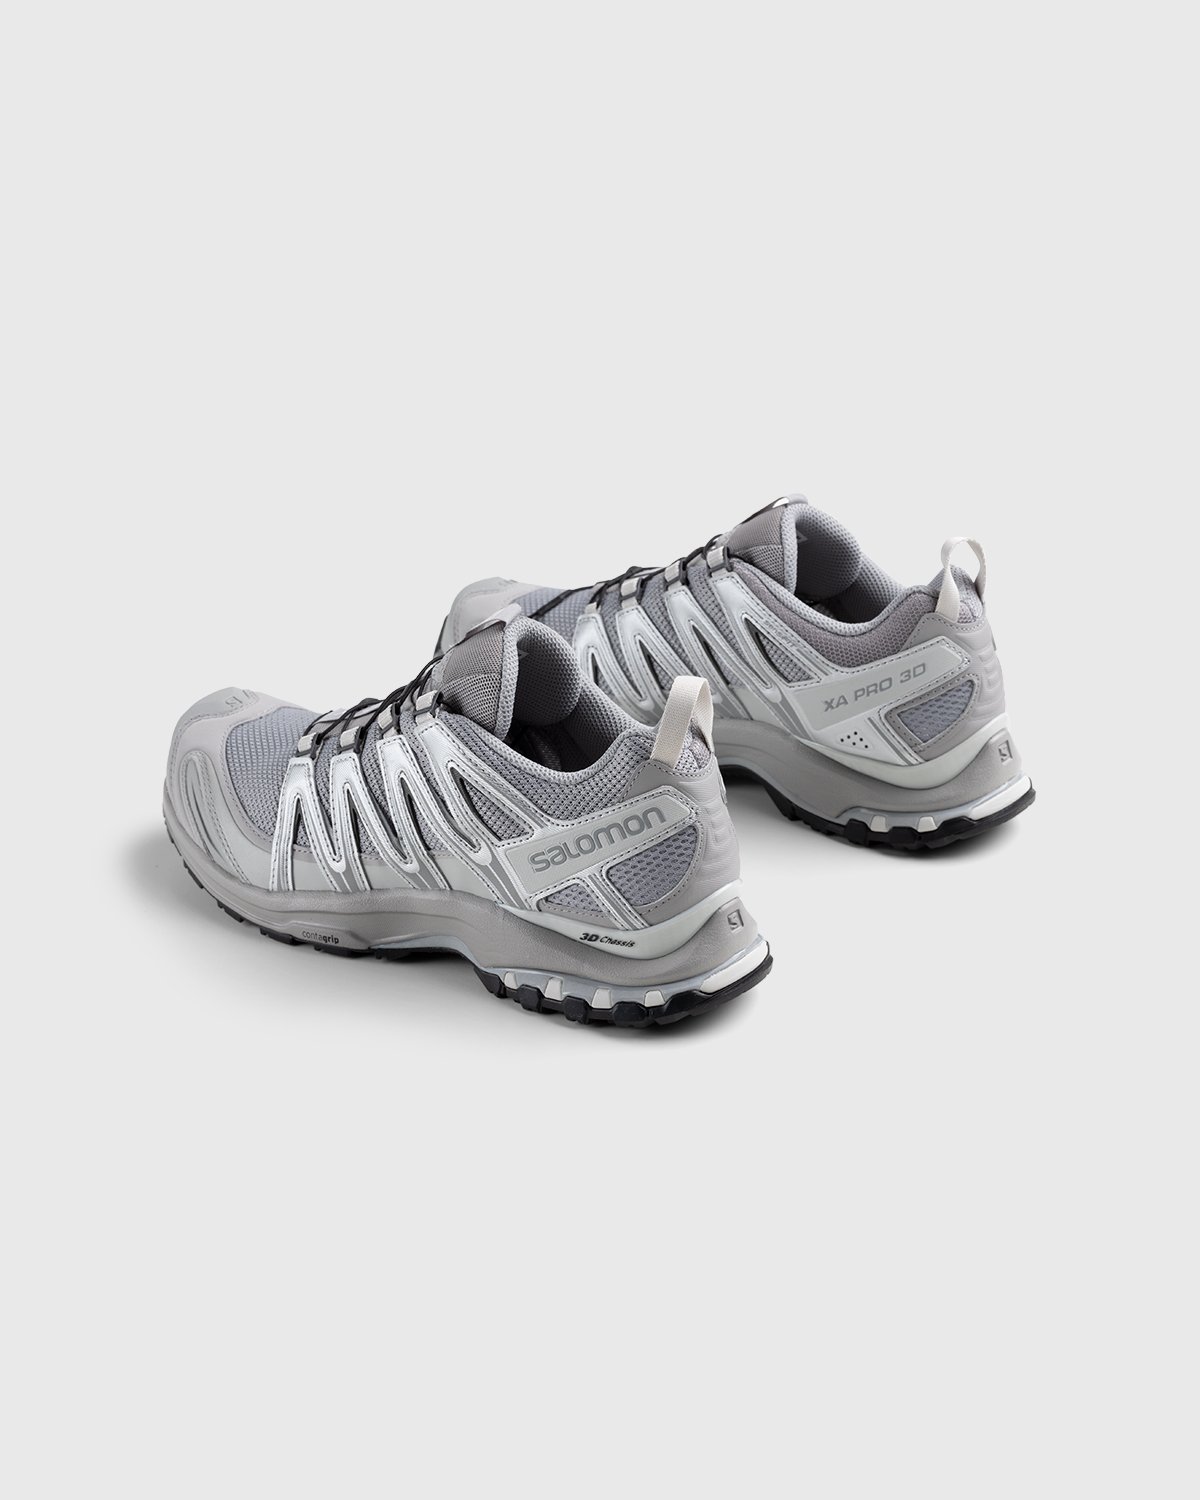 Salomon - XA Pro 3D Alloy/Silver/Lunar Rock - Footwear - White - Image 3